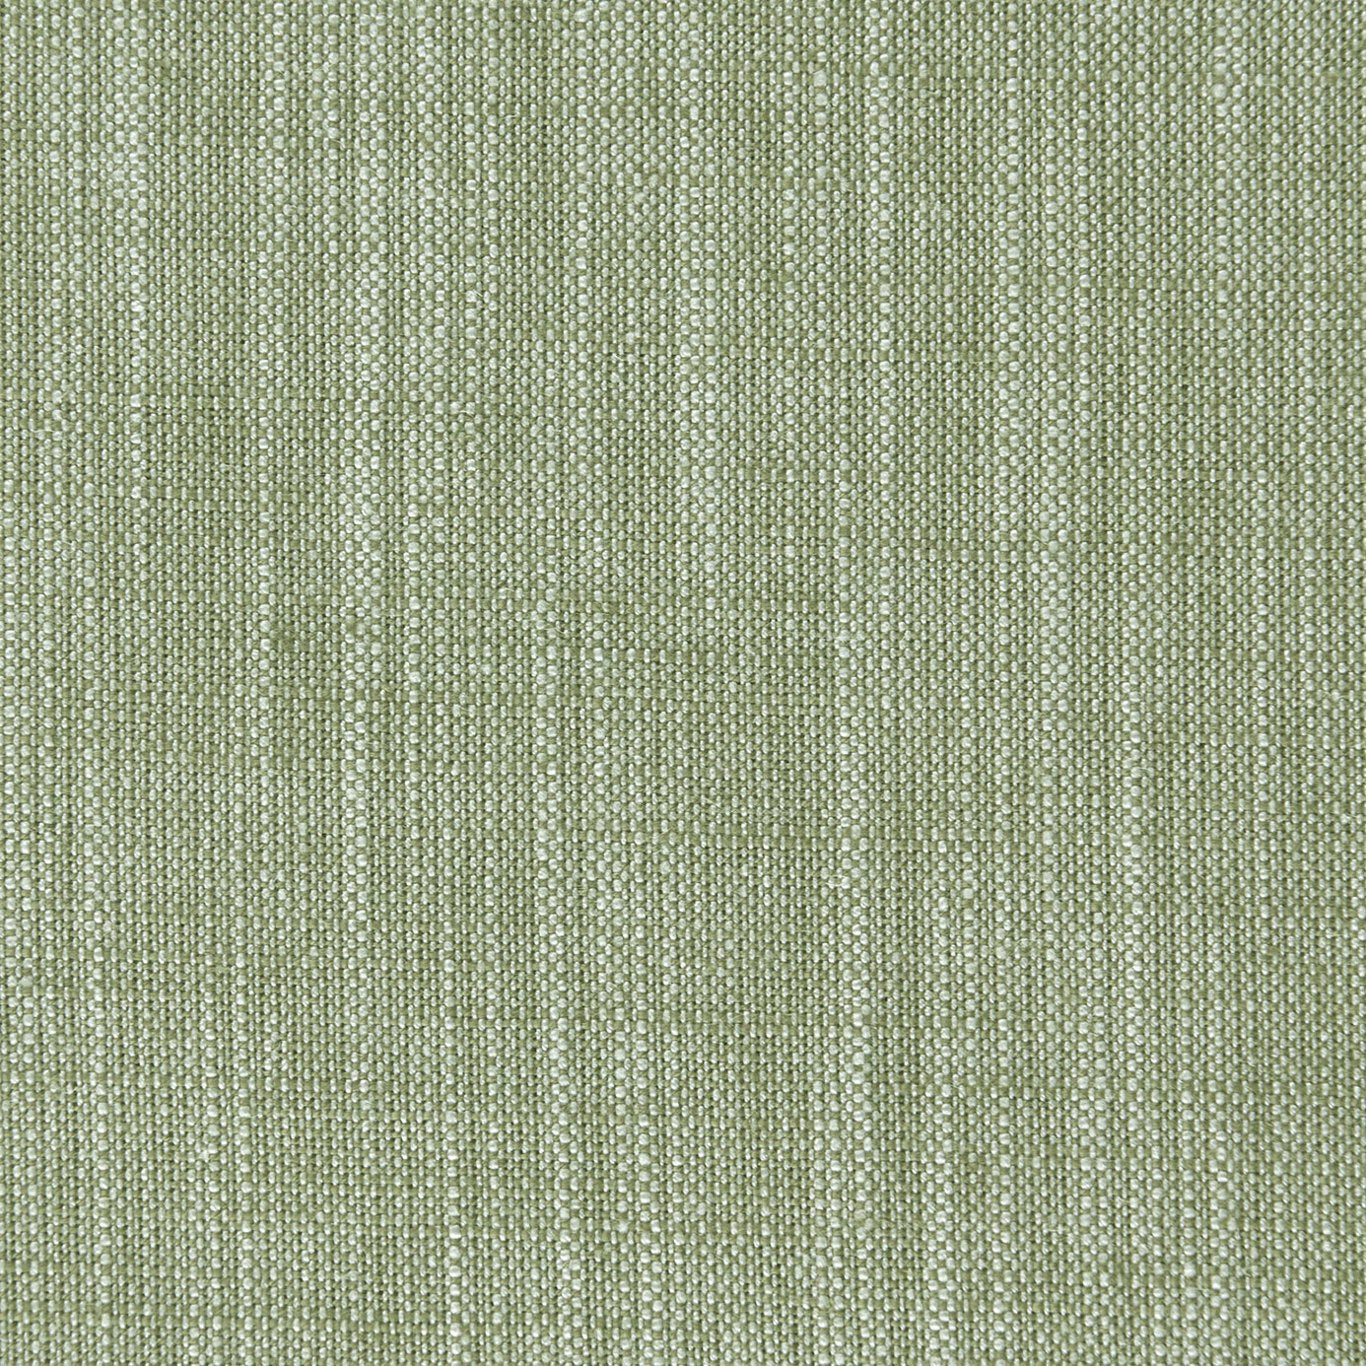 Biarritz Fabric by Clarke & Clarke - F0965/36 - Parsley